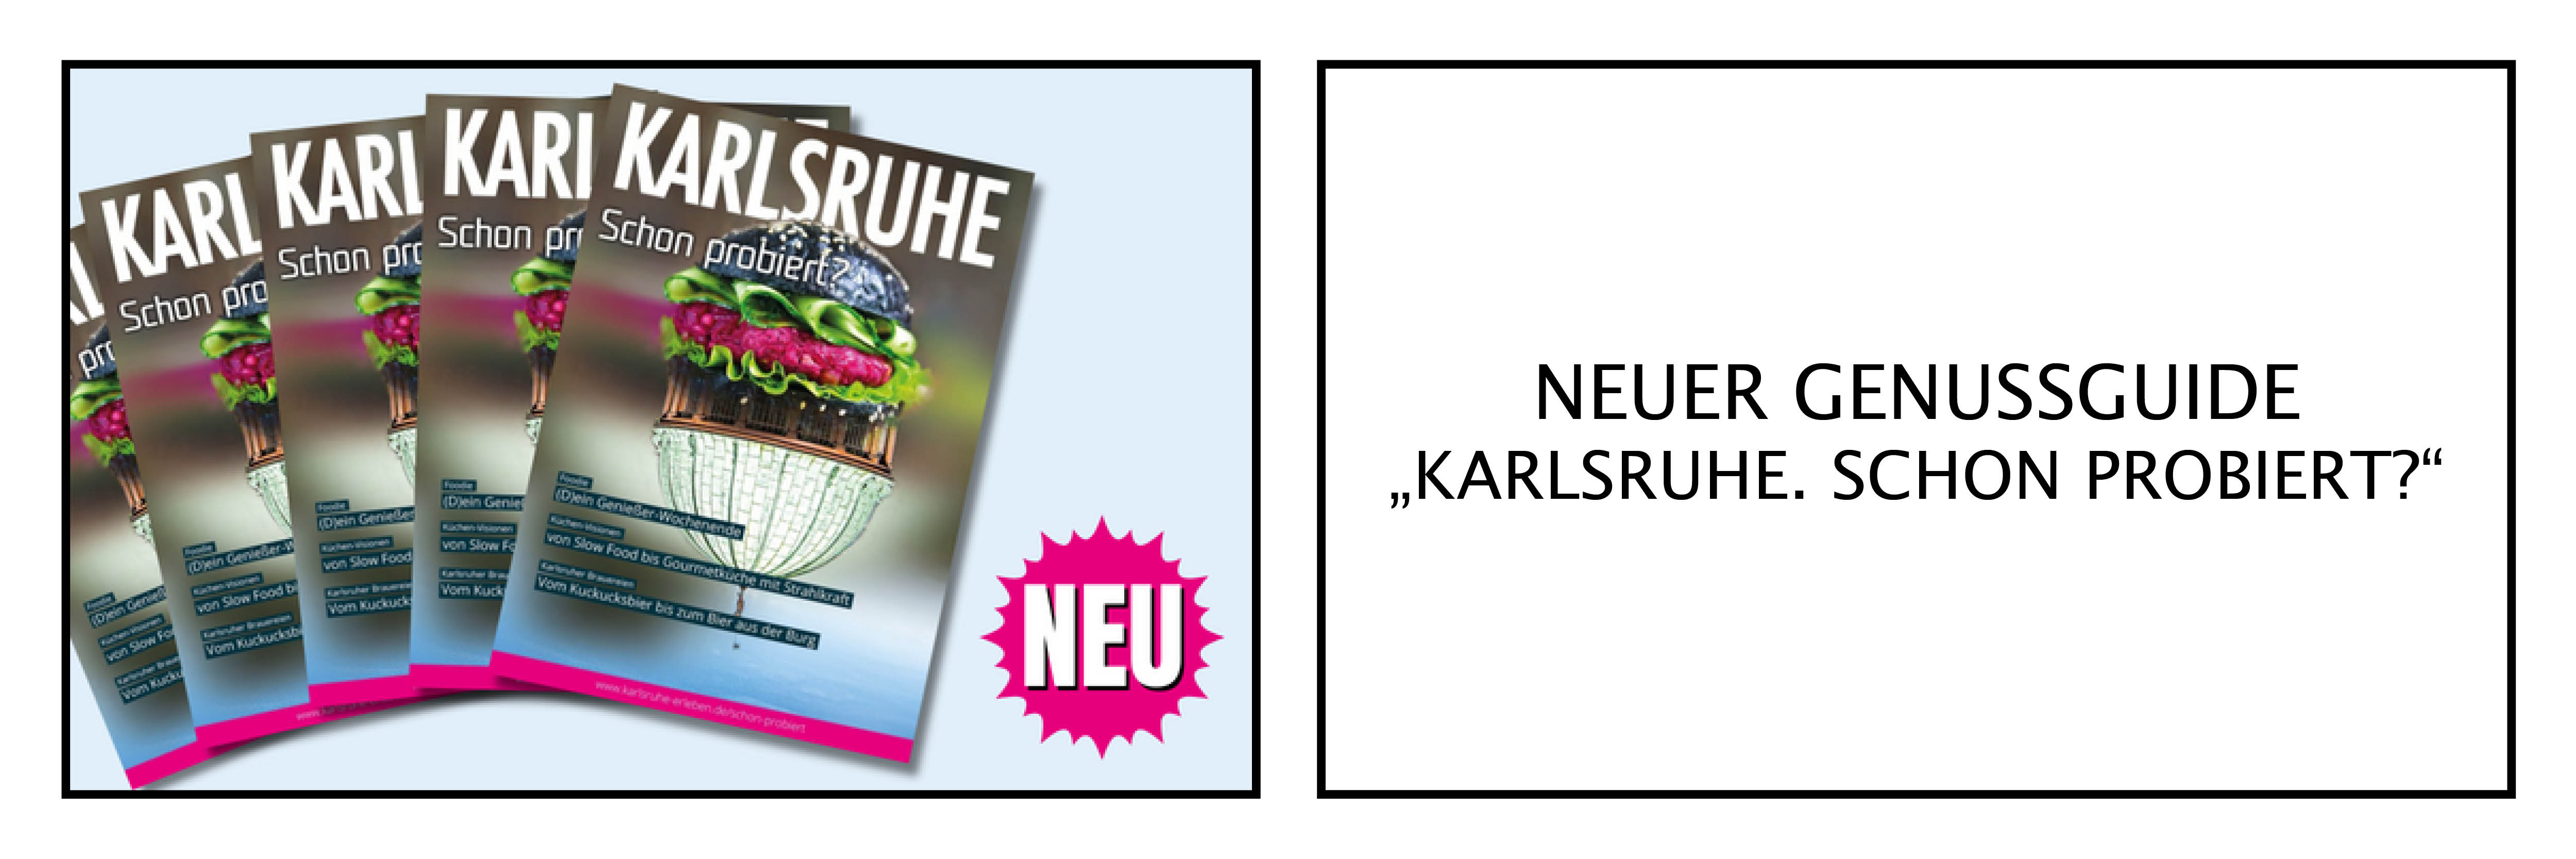 Neuer Genussguide "Karlsruhe.Schon probiert?"